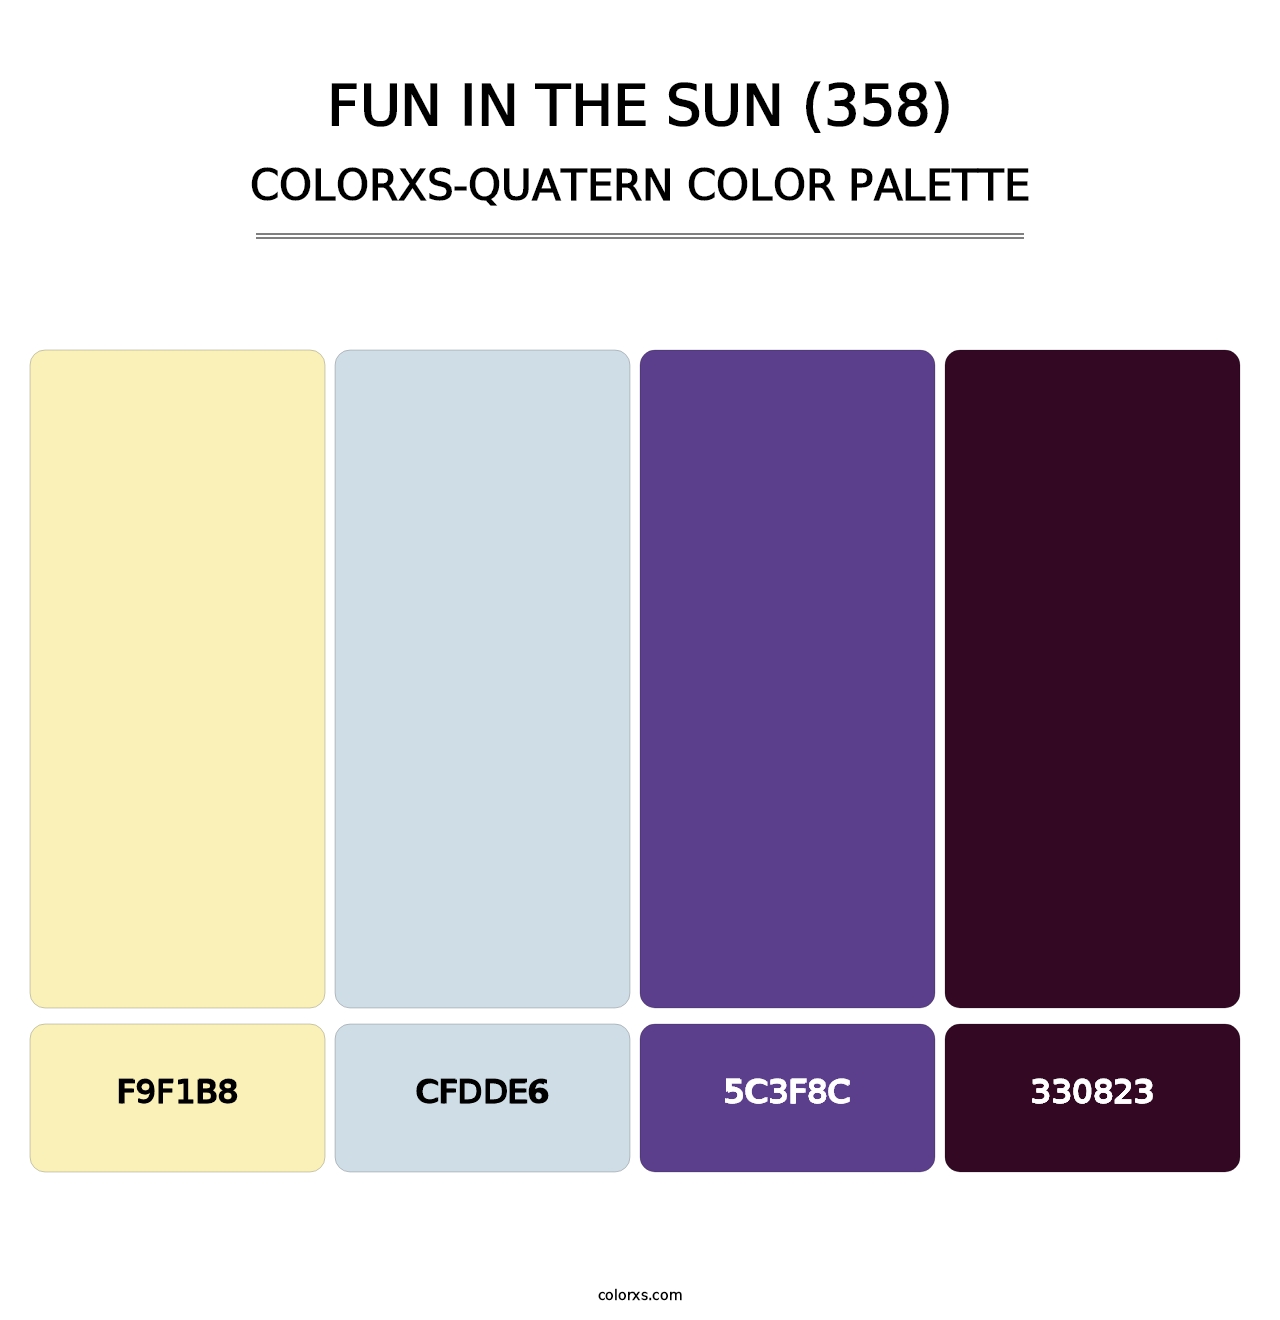 Fun in the Sun (358) - Colorxs Quatern Palette